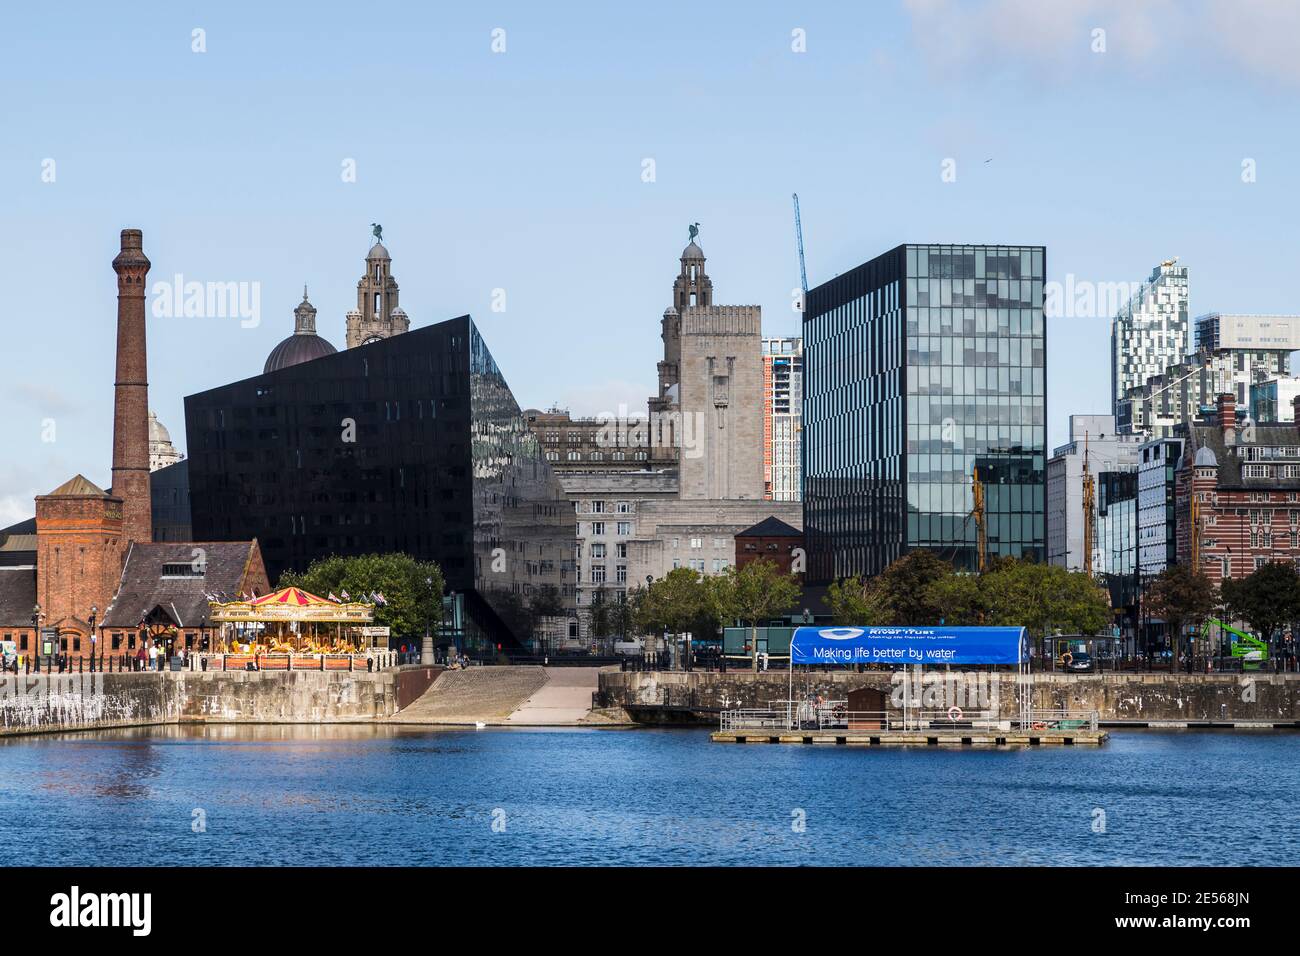 La lumière du soleil se reflète sur les bâtiments modernes du front de mer de Liverpool. Banque D'Images